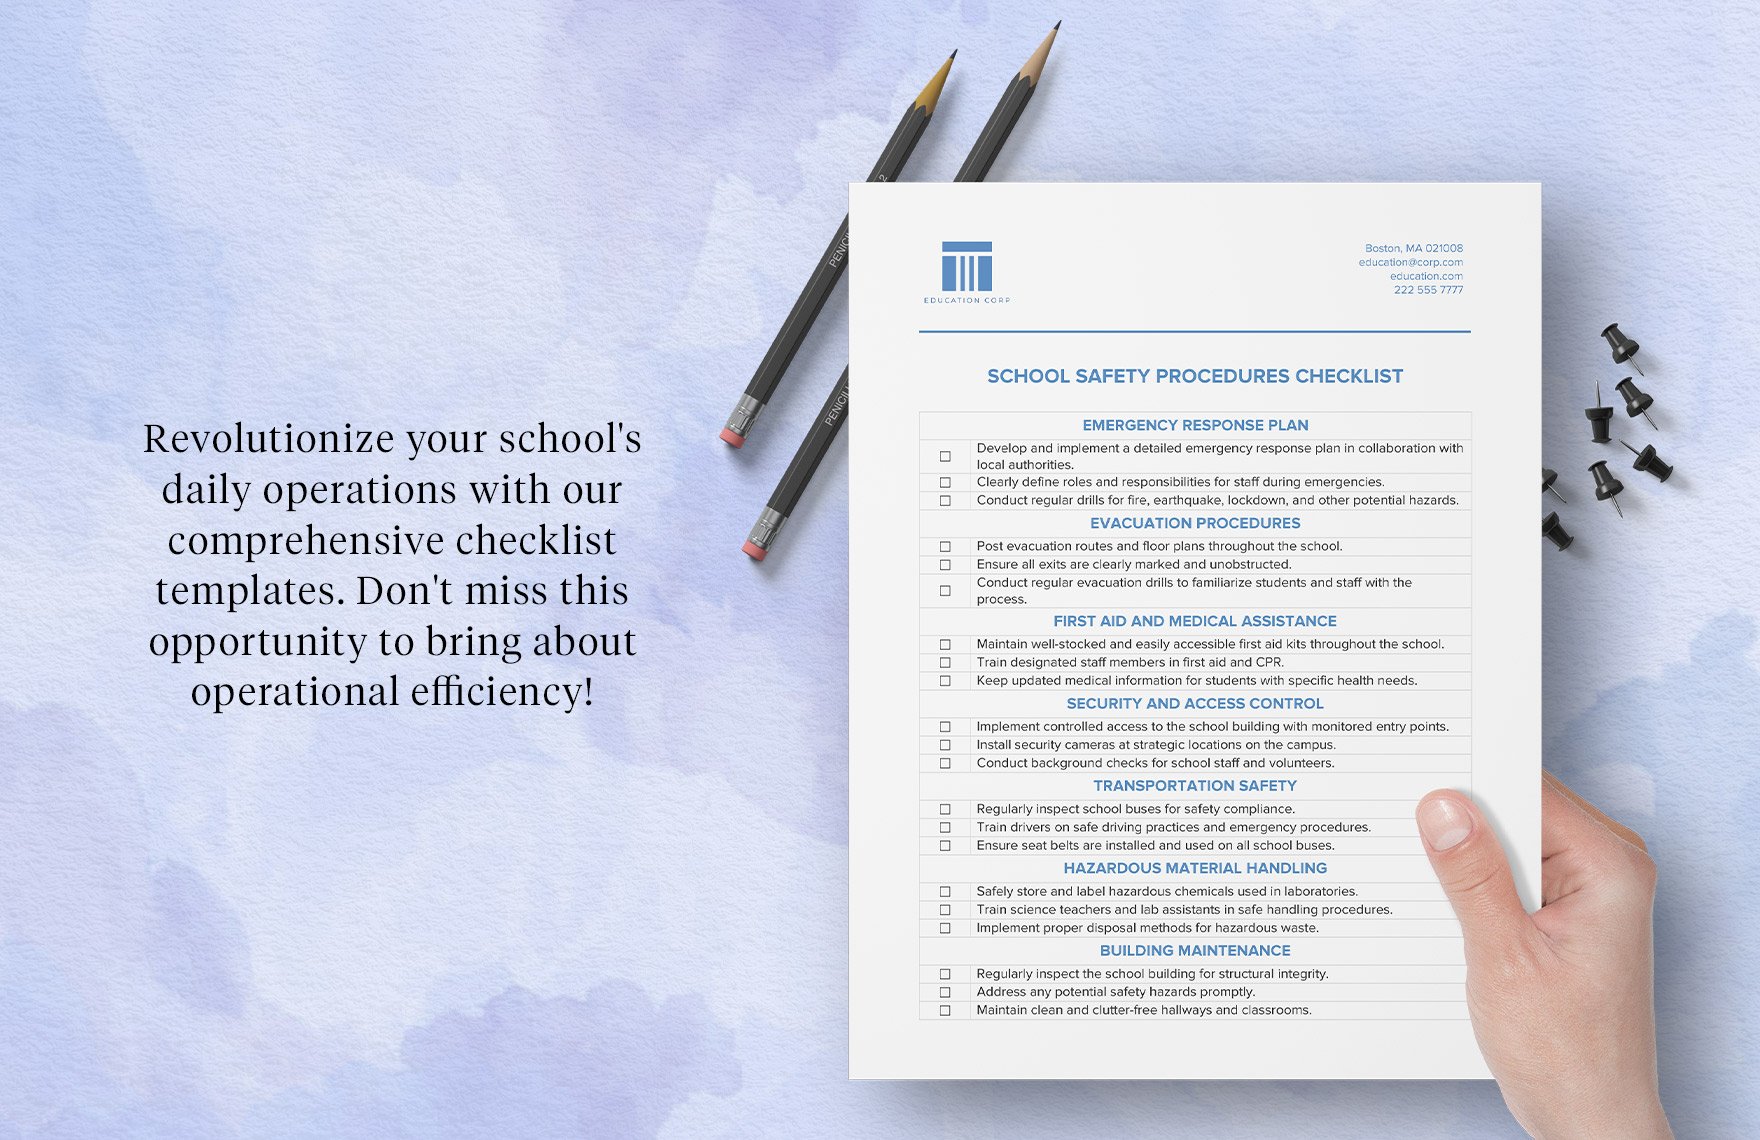 School Safety Procedures Checklist Template